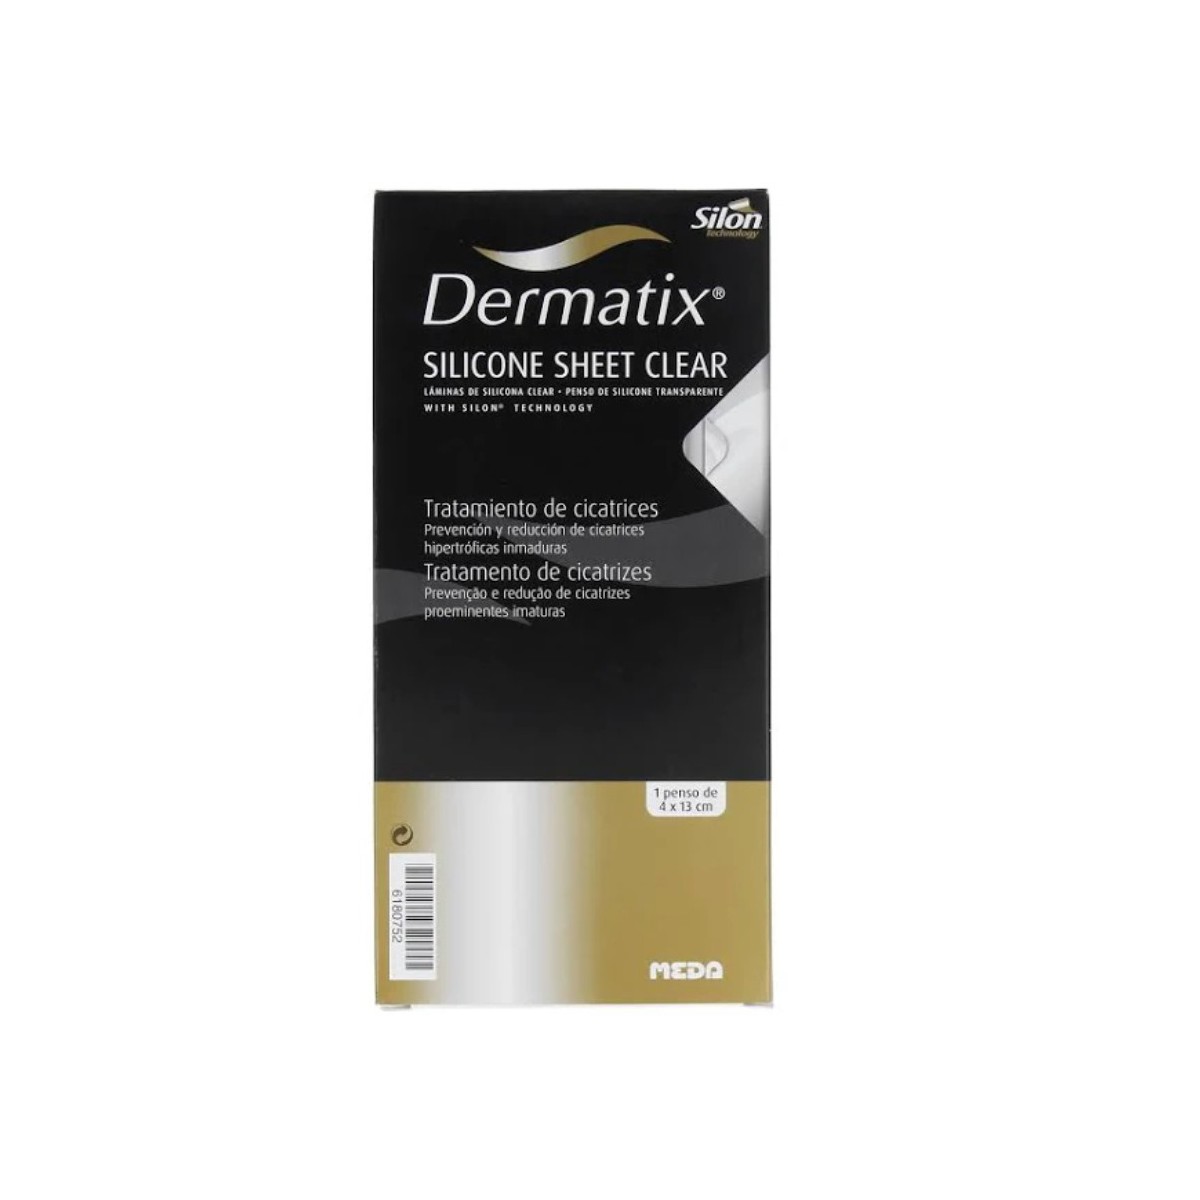 dermatix silicona clear 4 x 13 cm